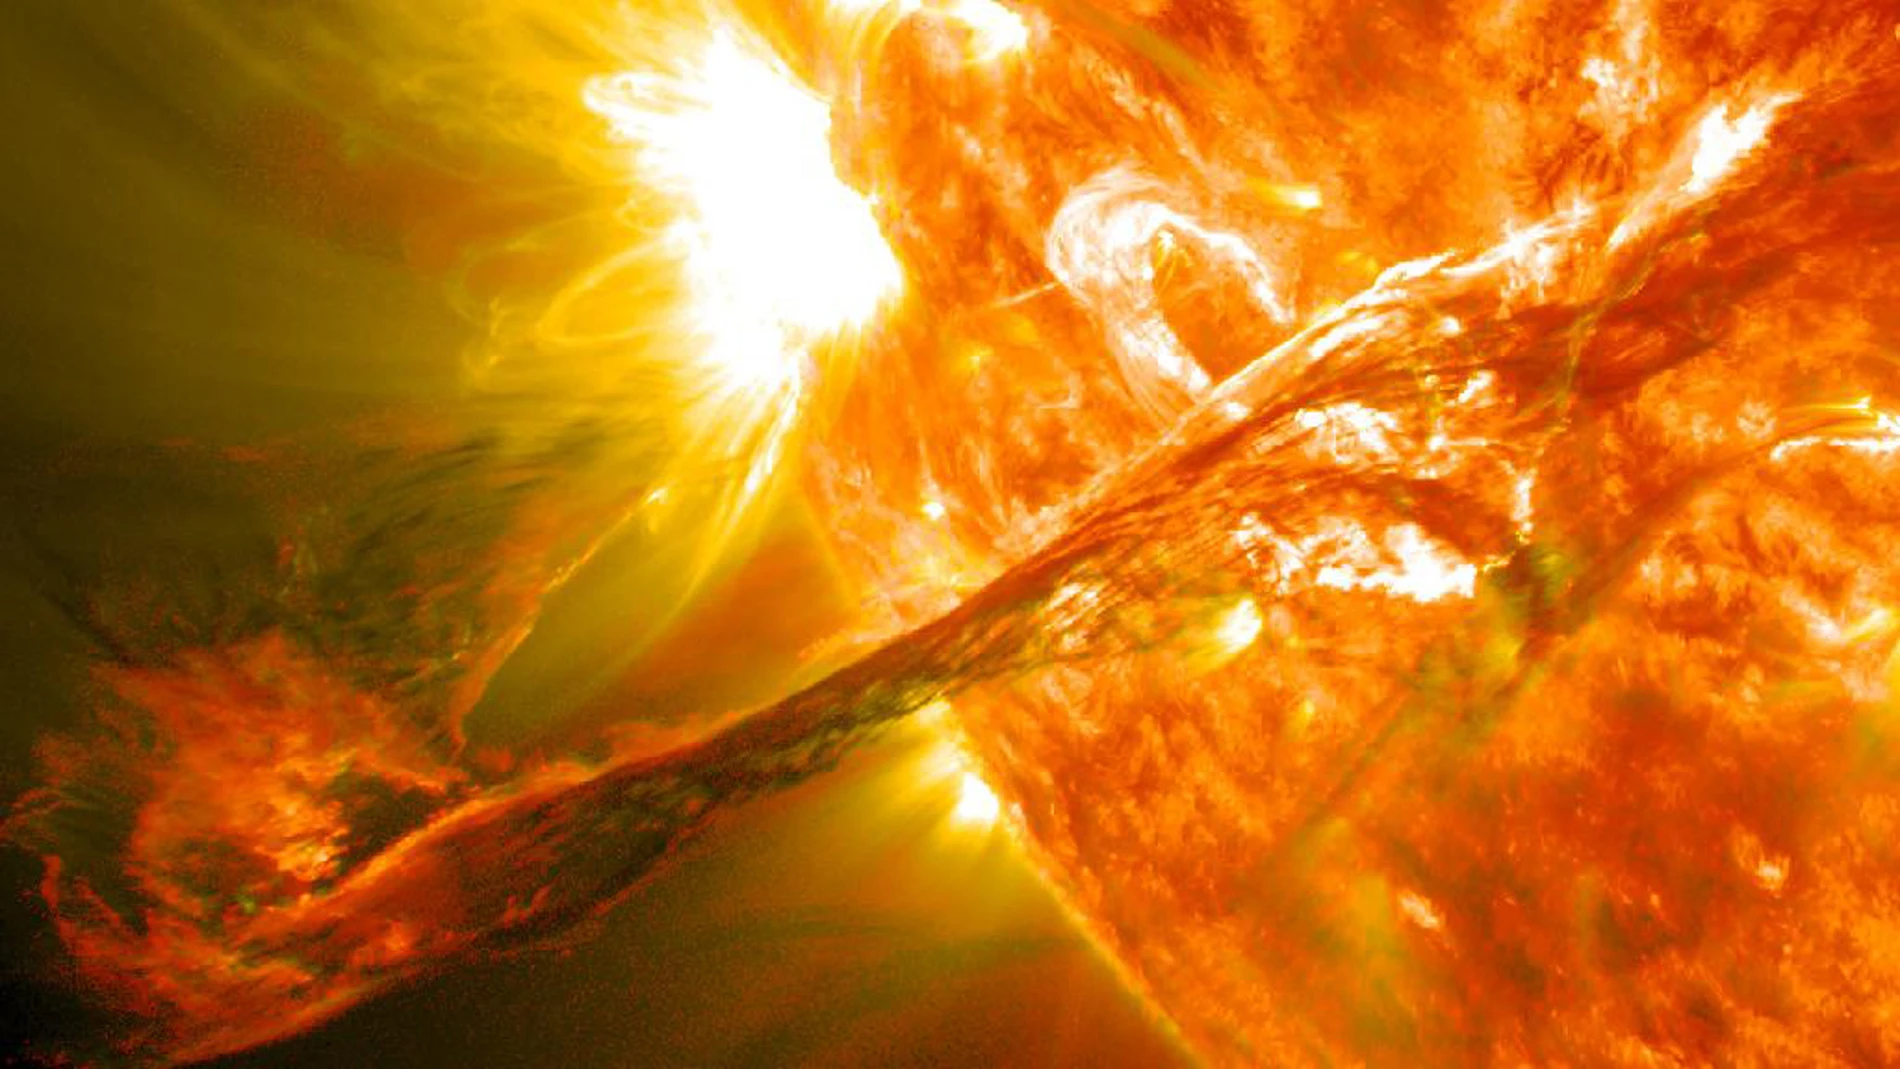 Llamarada solar captada por la NASA en 2012